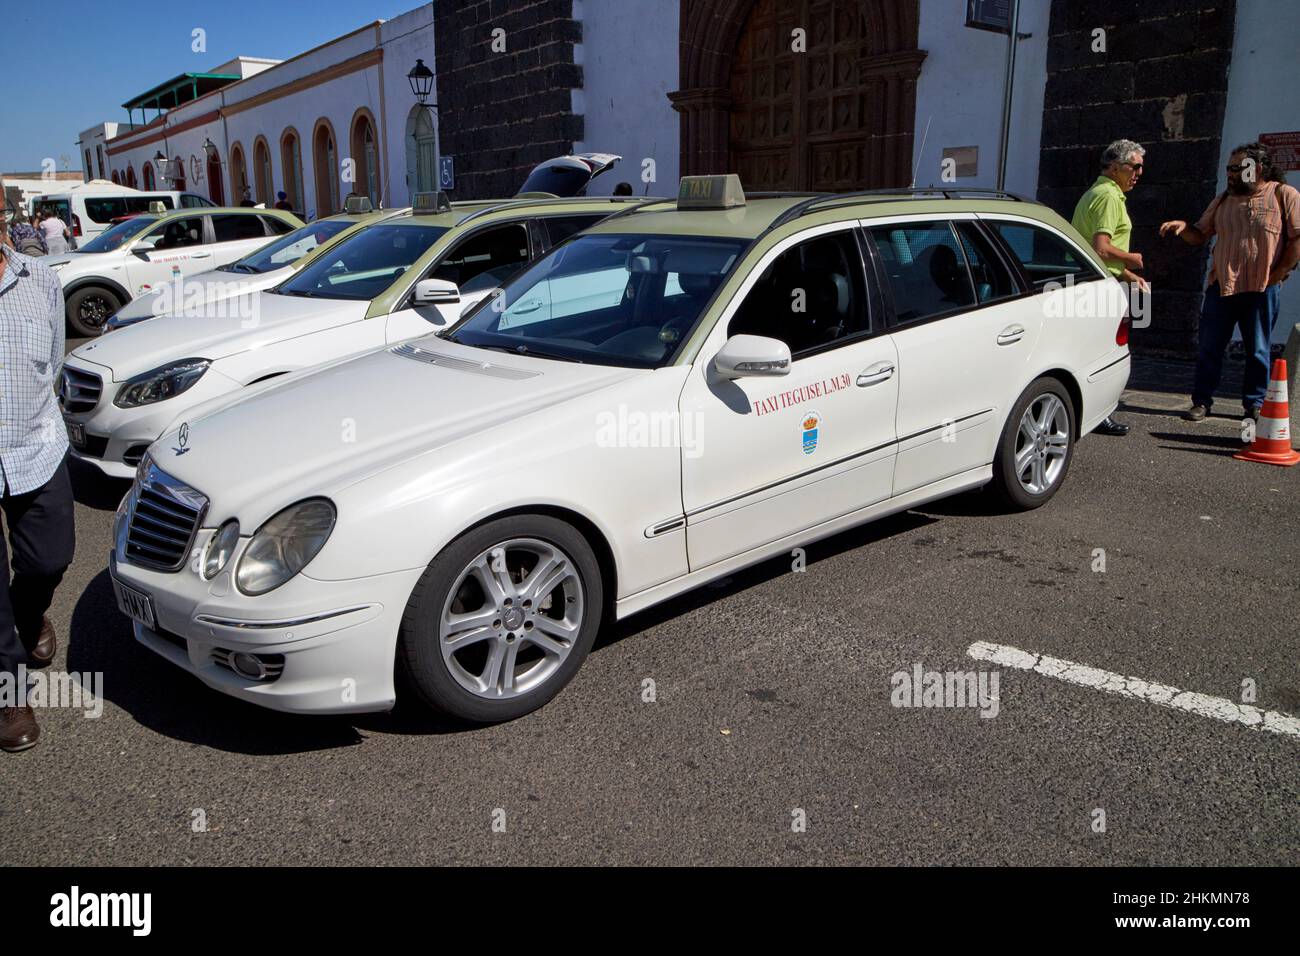 Grün und weiß teguise Taxis warten auf Fahrpreise am Markttag Teguise Lanzarote Kanarische Inseln Spanien Stockfoto